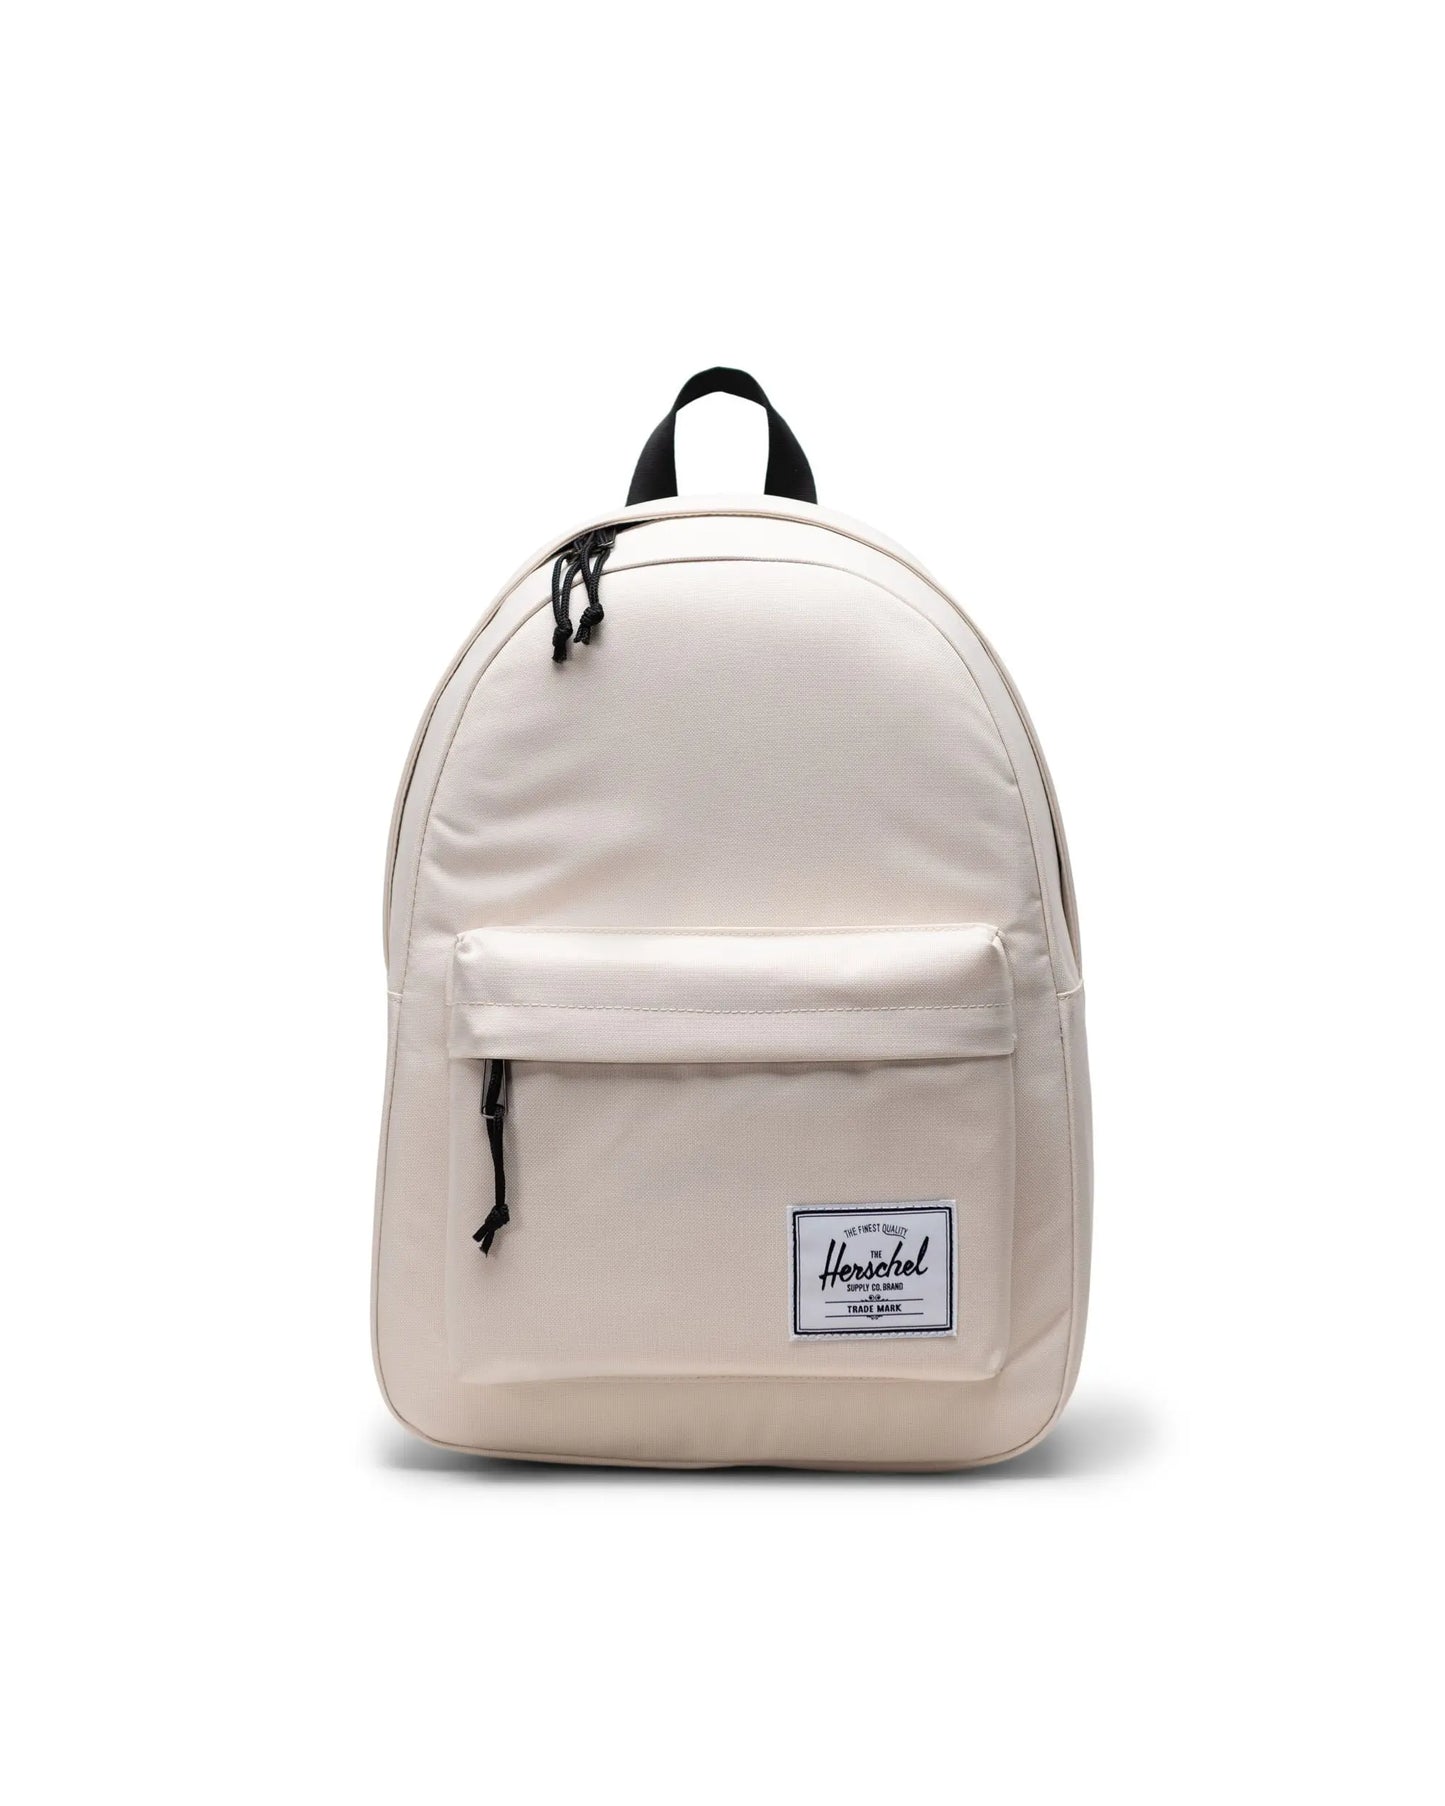 Herschel Classic Backpack - Whitecap Gray